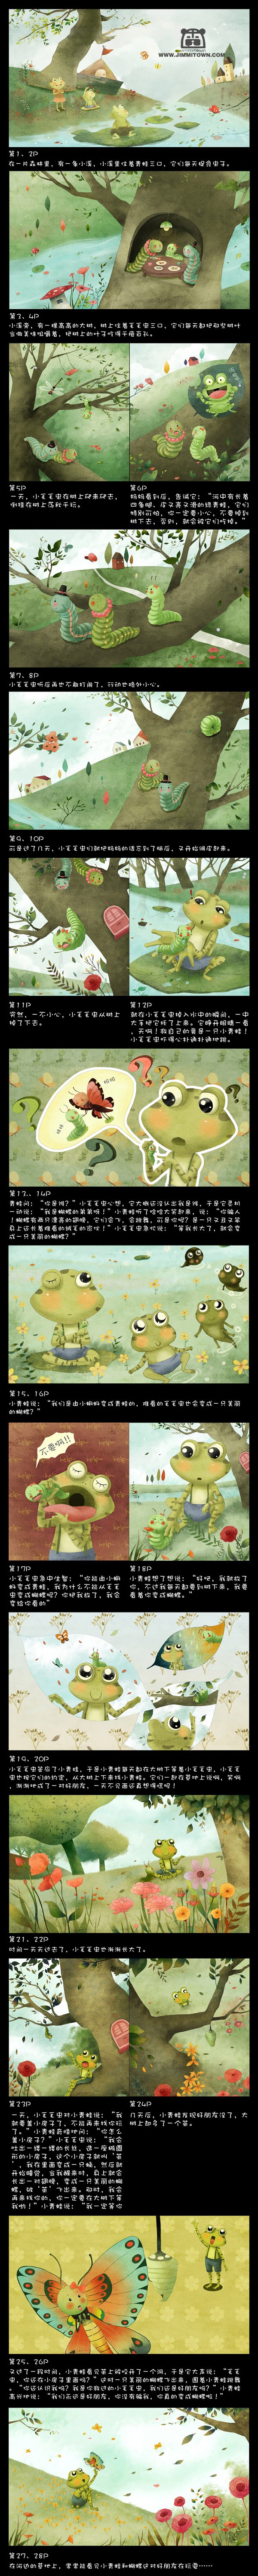 儿童绘本《青蛙和毛毛虫》